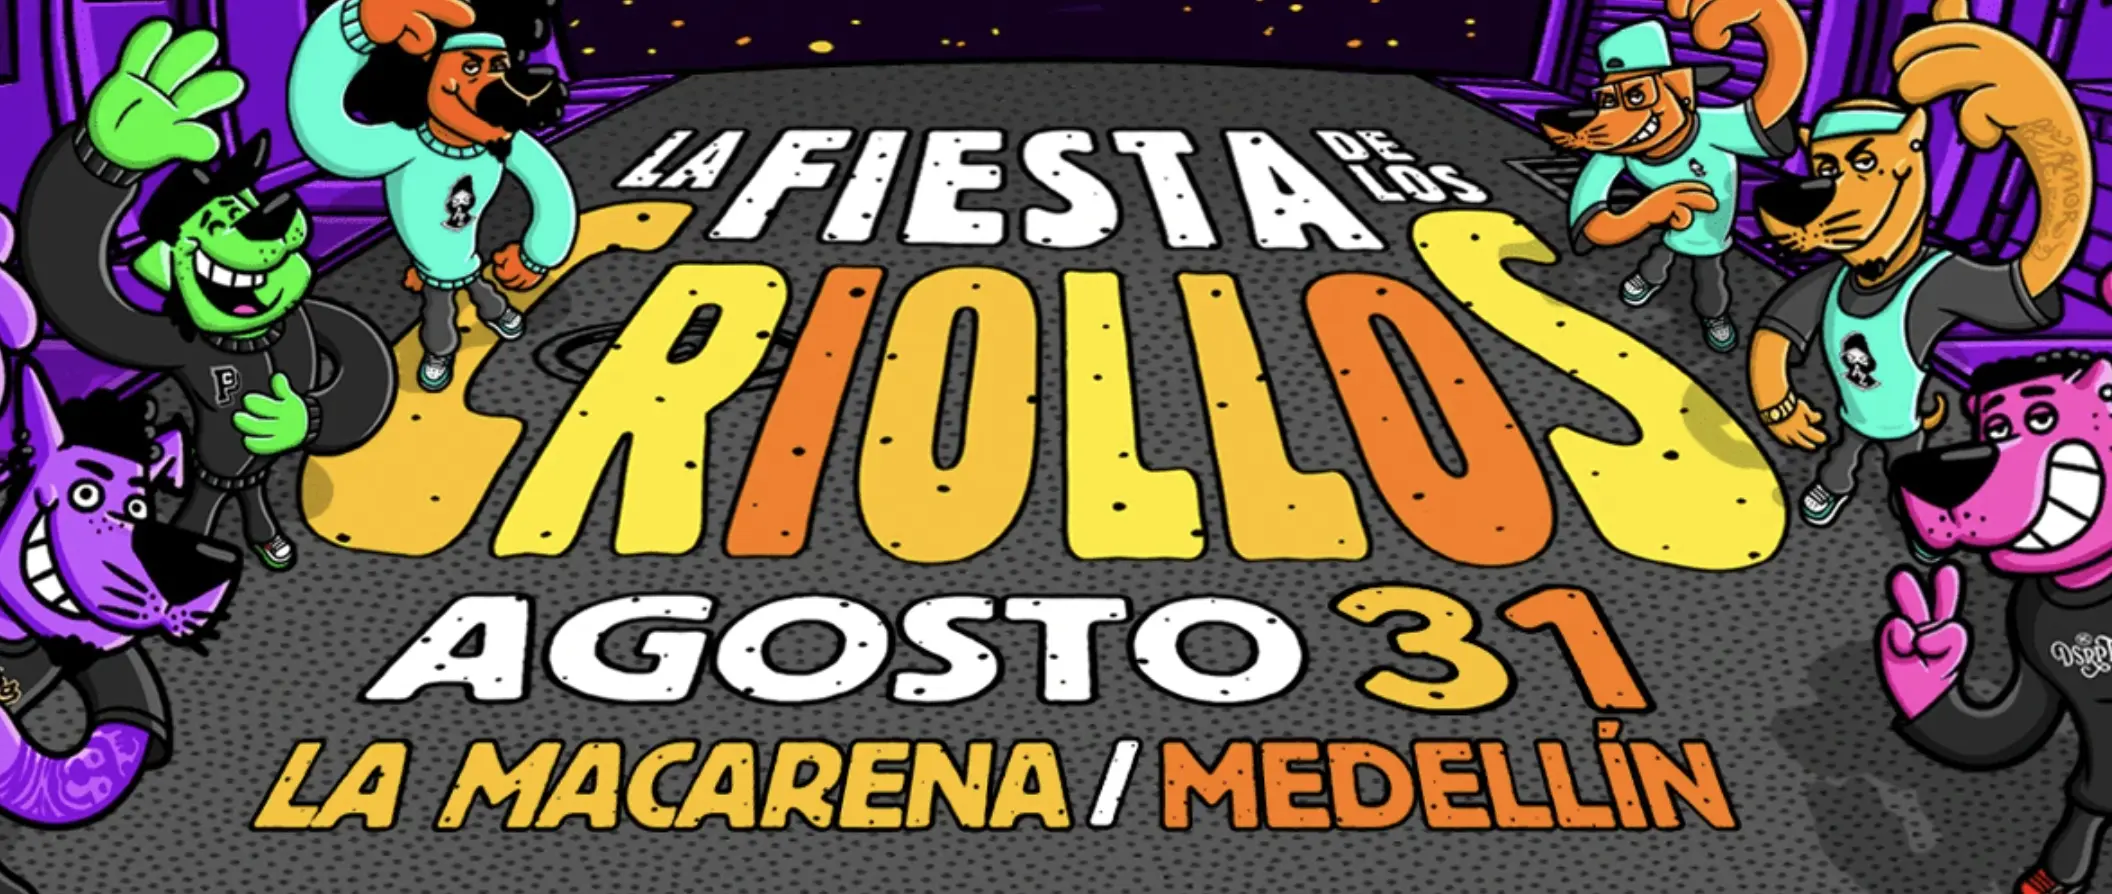 Comprar entradas para La fiesta de los criollos - Agosto 31 en Medellín